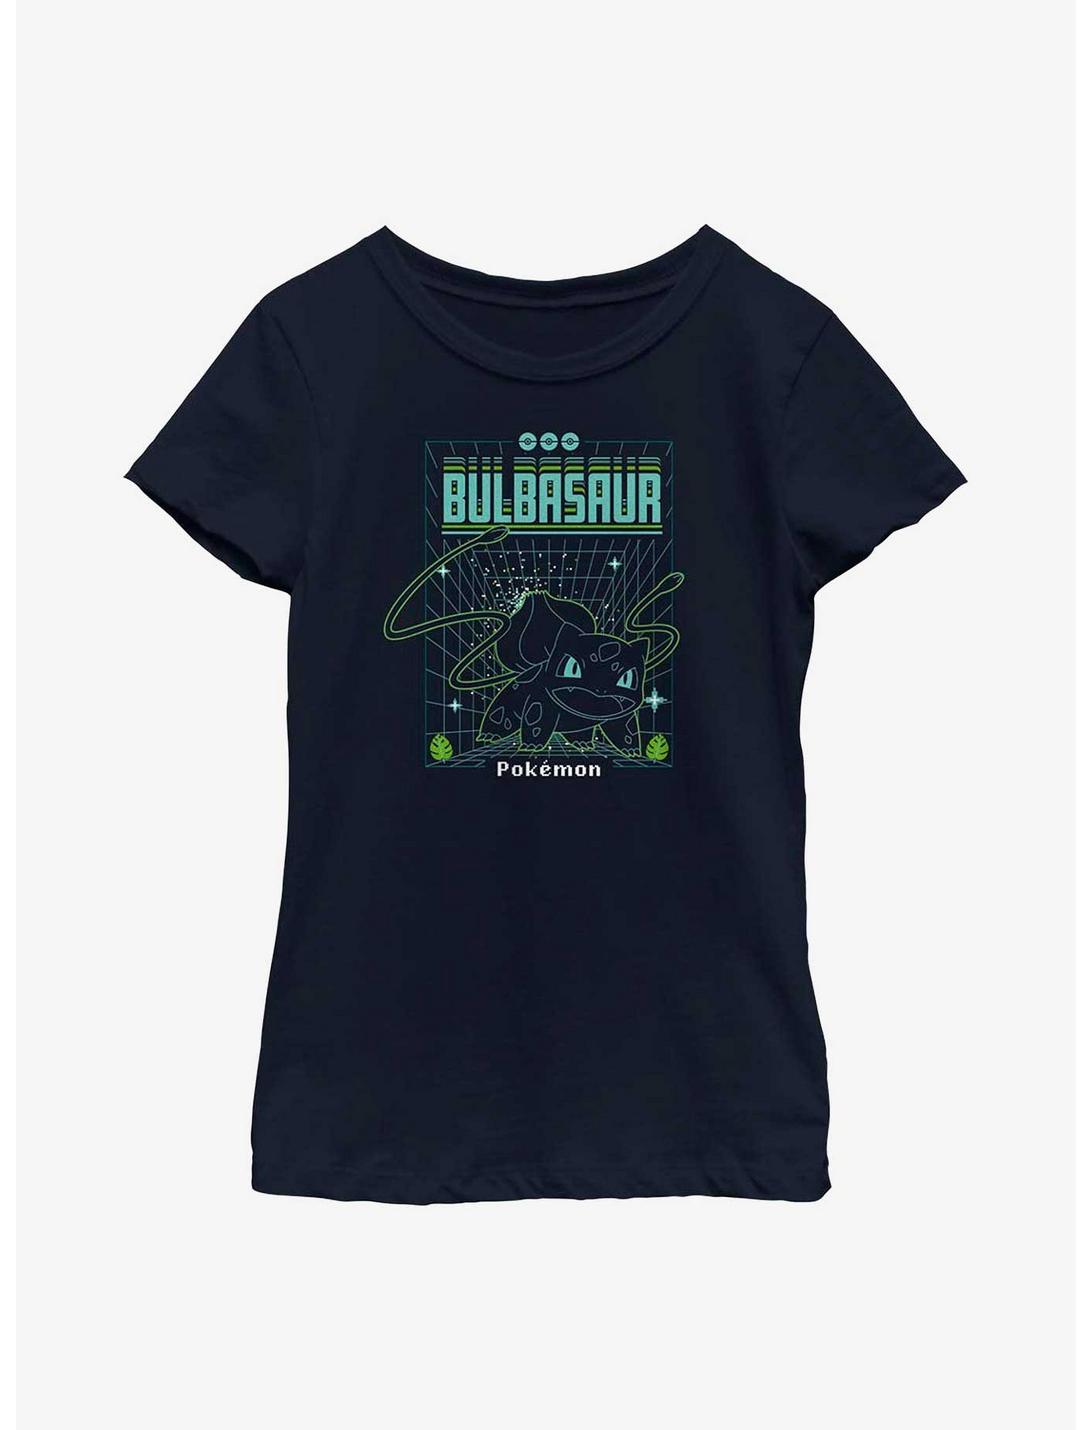 Pokemon Bulbasaur Grid Youth Girls T-Shirt, NAVY, hi-res